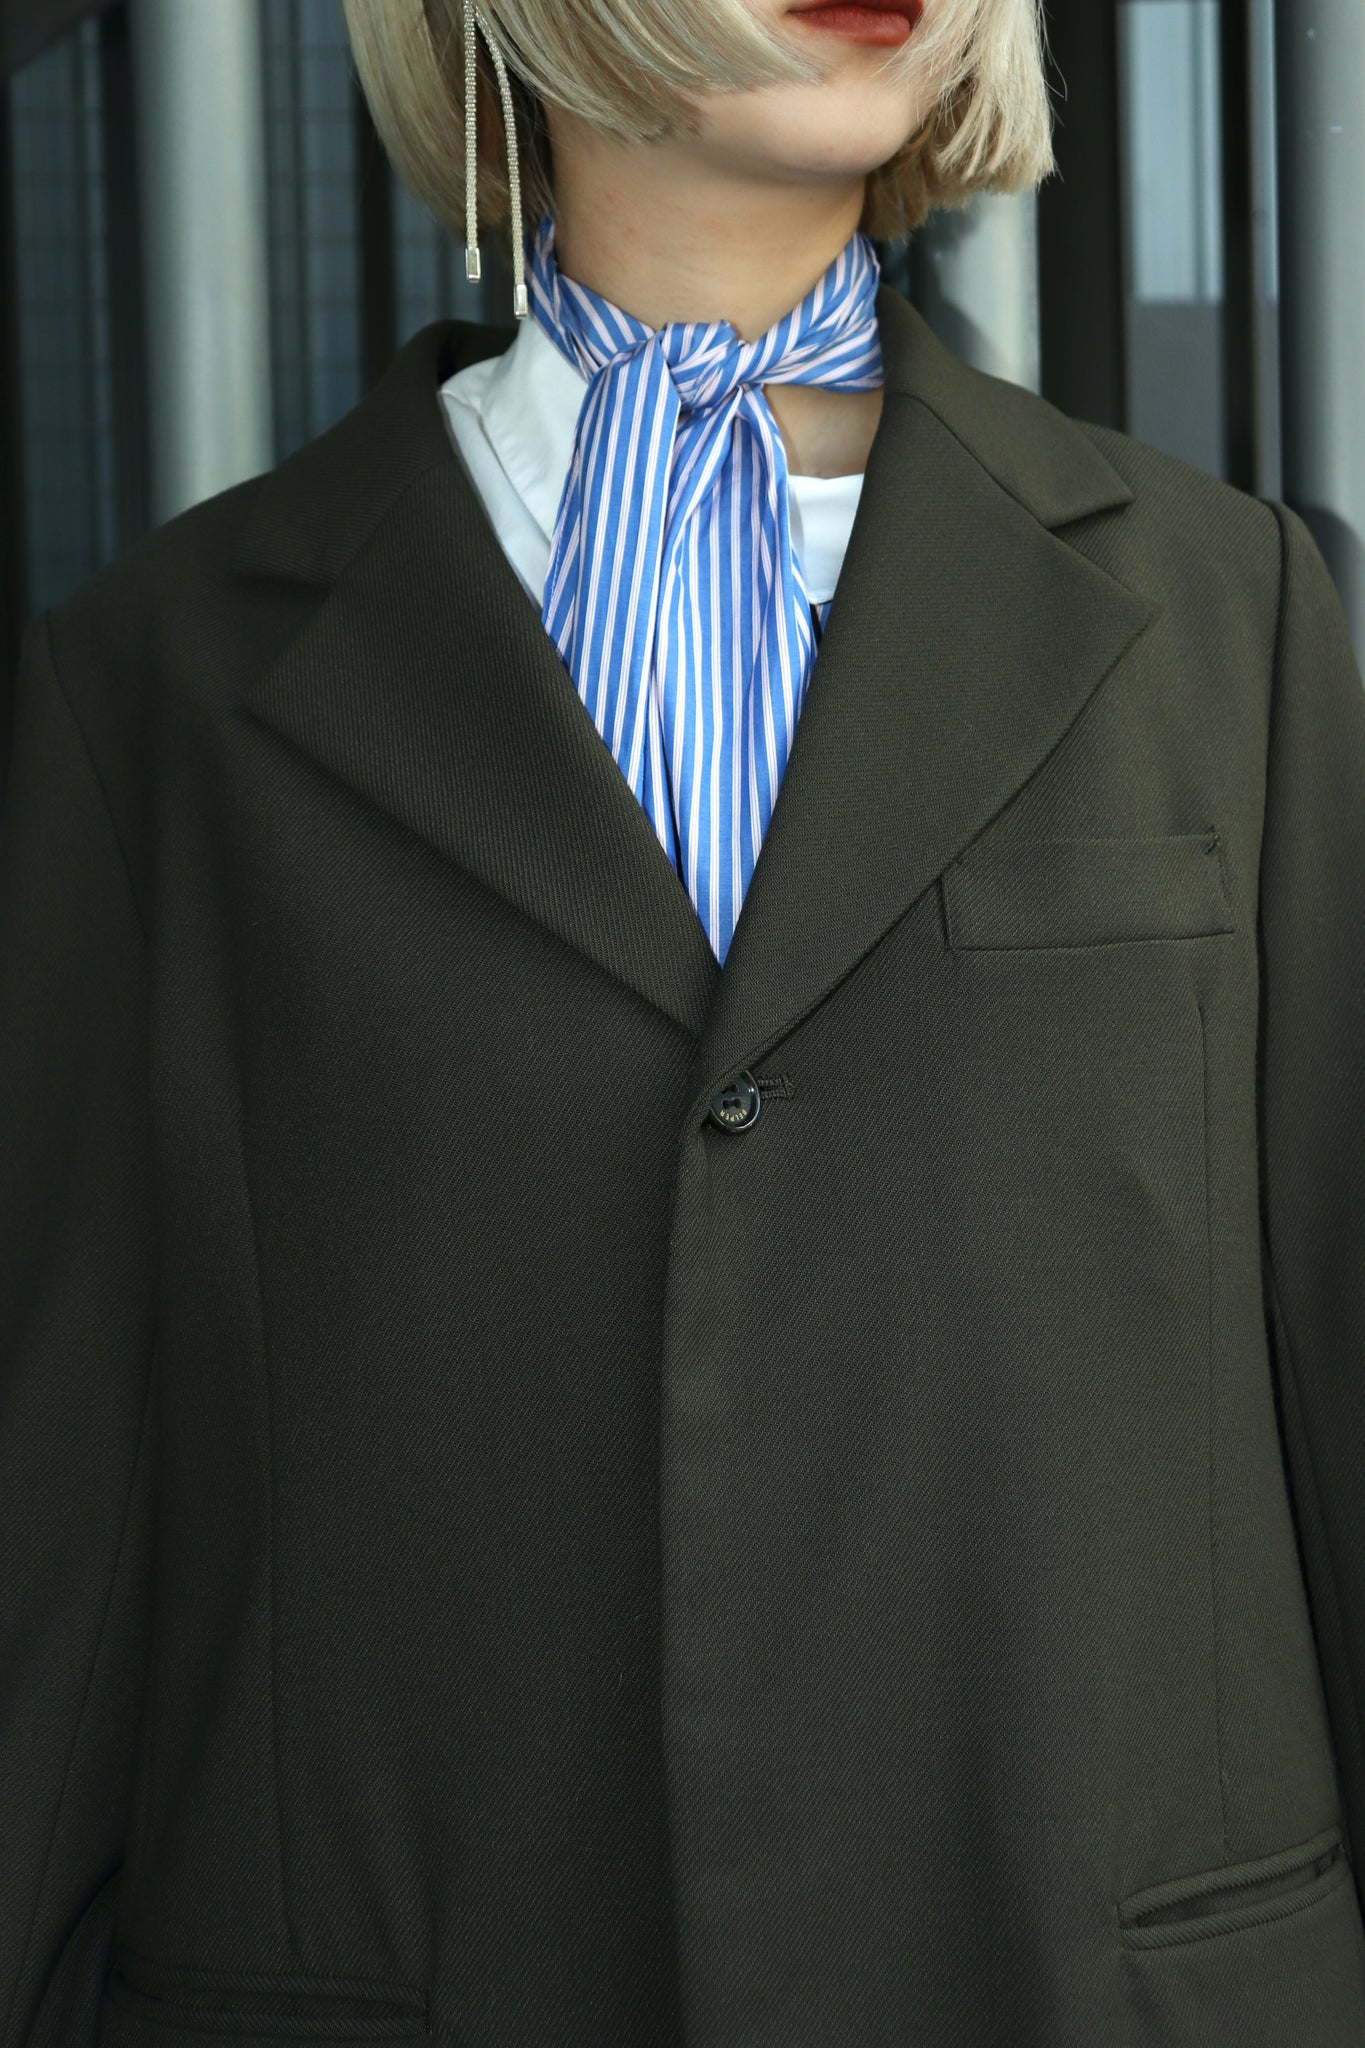 BELPERの20awのUNCLE JACKETのKHKのサイズ1とIRREGULAR SLUCKSのKHKのサイズ1とsodukの21awの scarf shirtのWHTとRATHELの21awのTAMIKAの着用画像